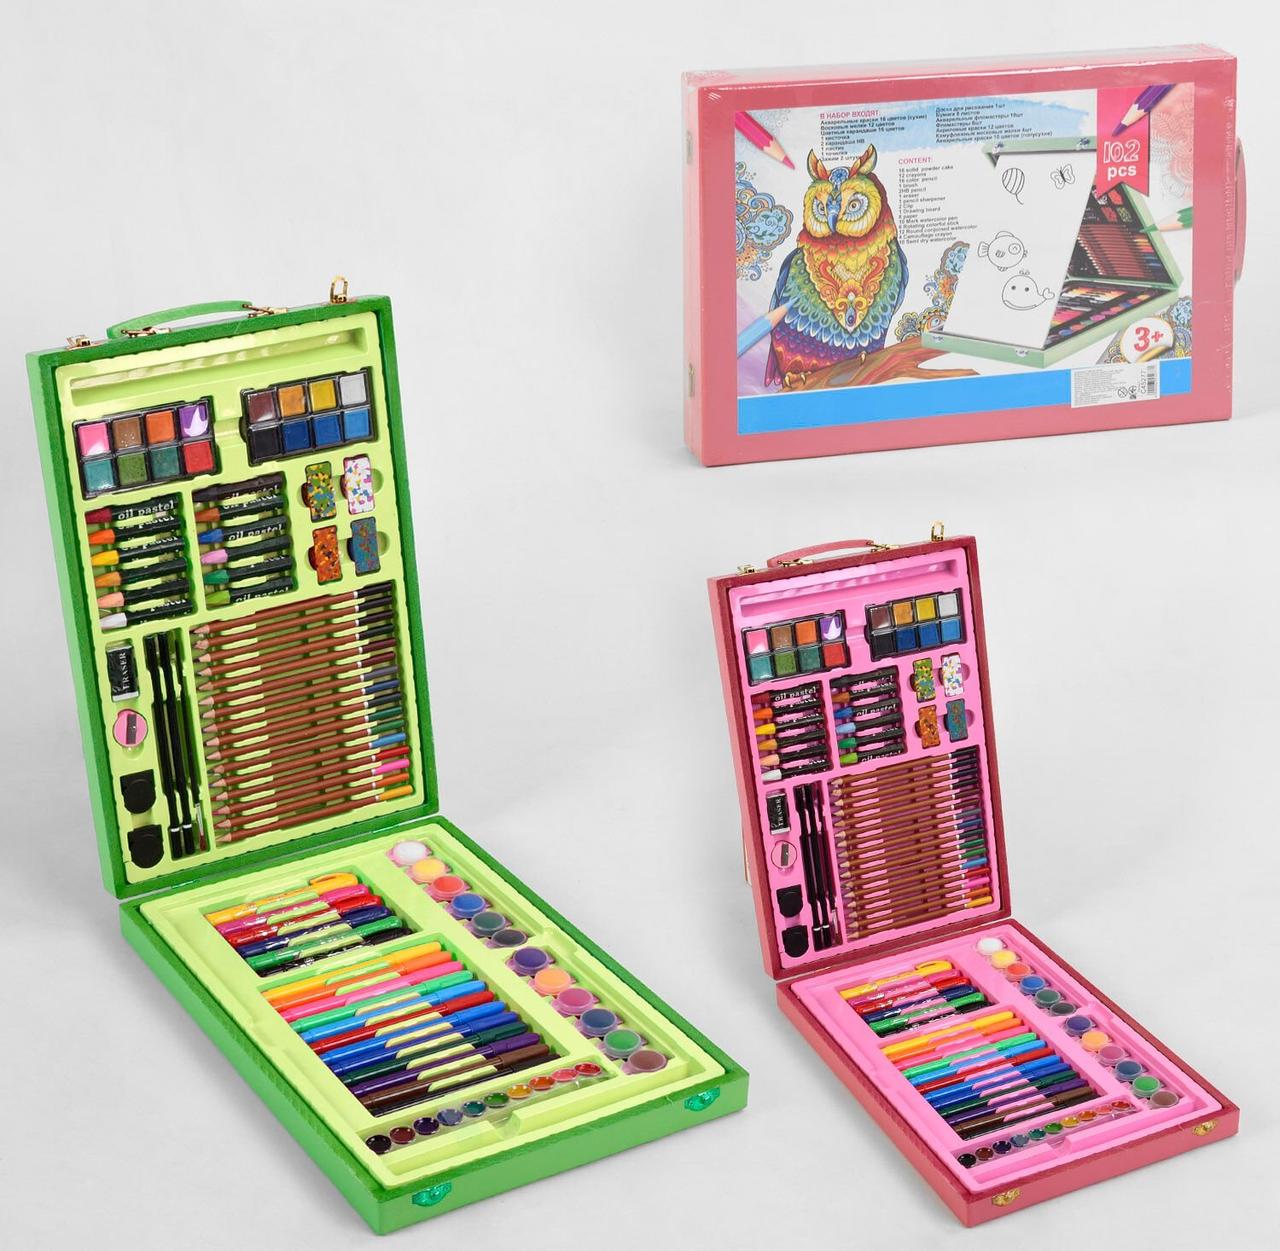 

Большой набор для рисования в чемодане с красками, карандашами, фломастерами и мелками, 102 предмета (45277)